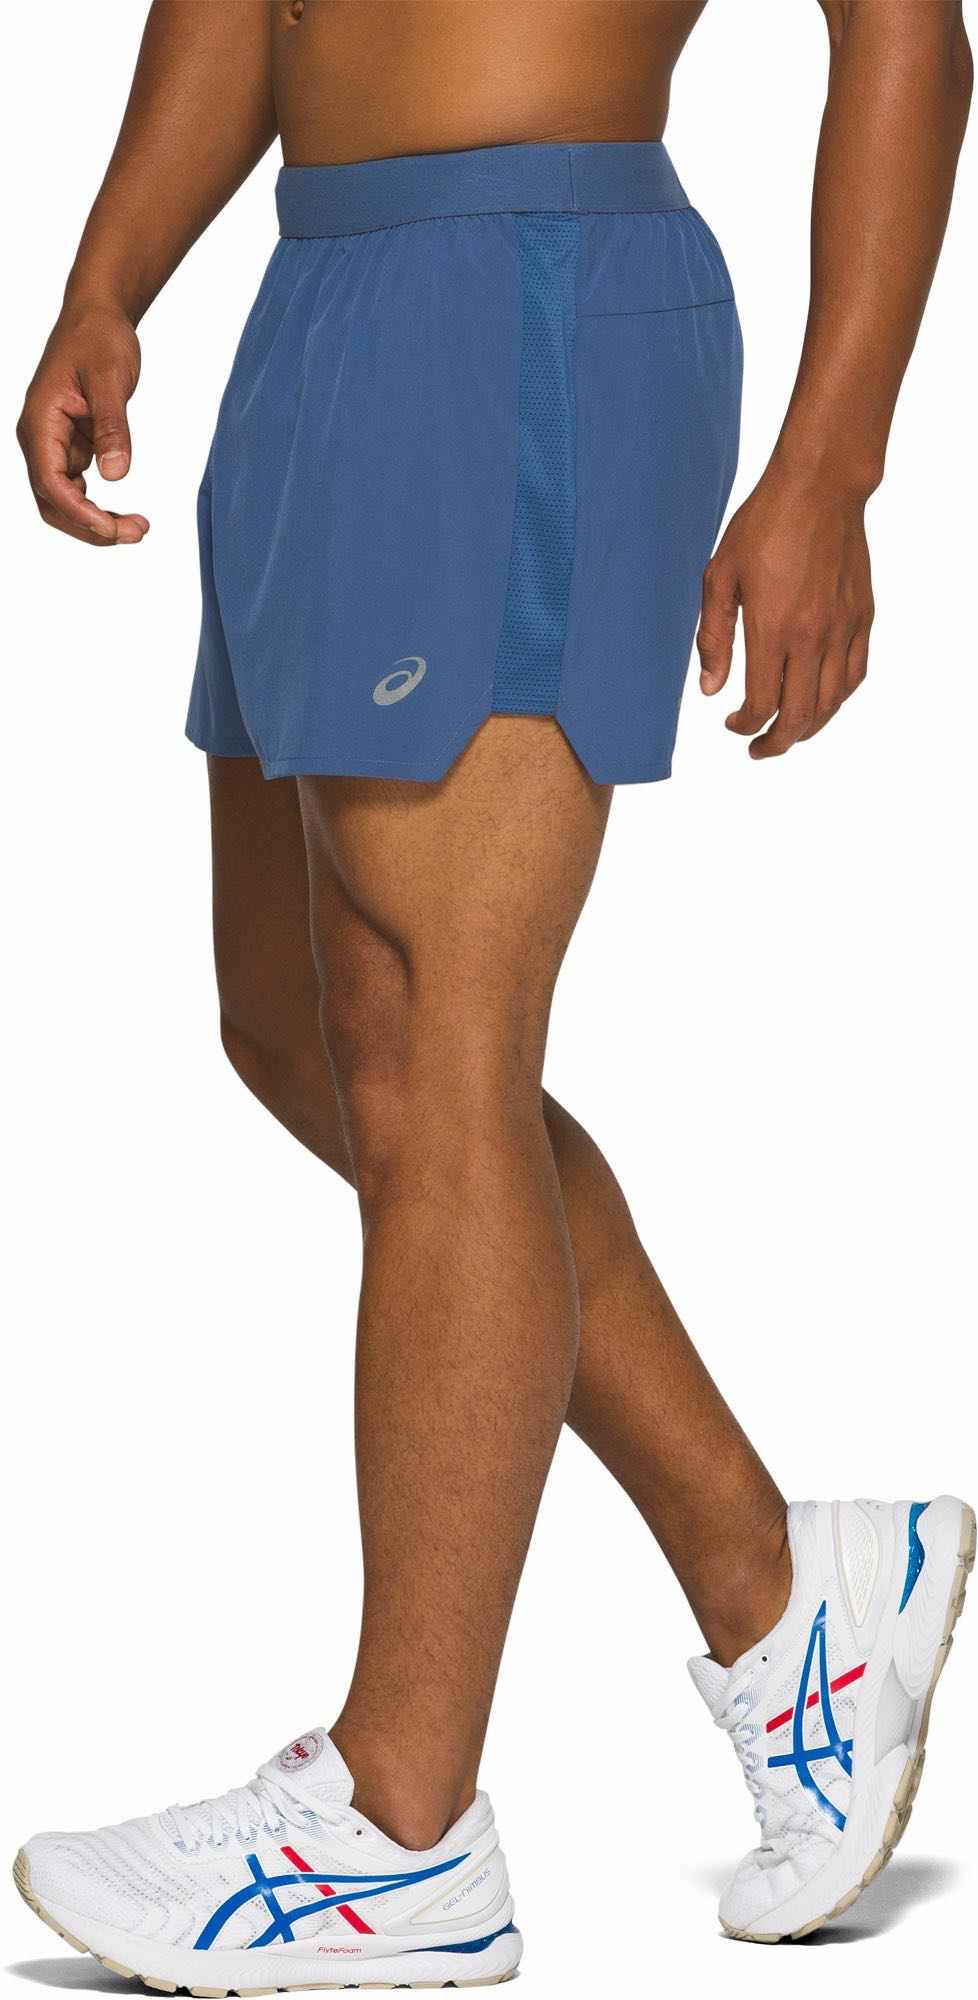 Men's running shorts